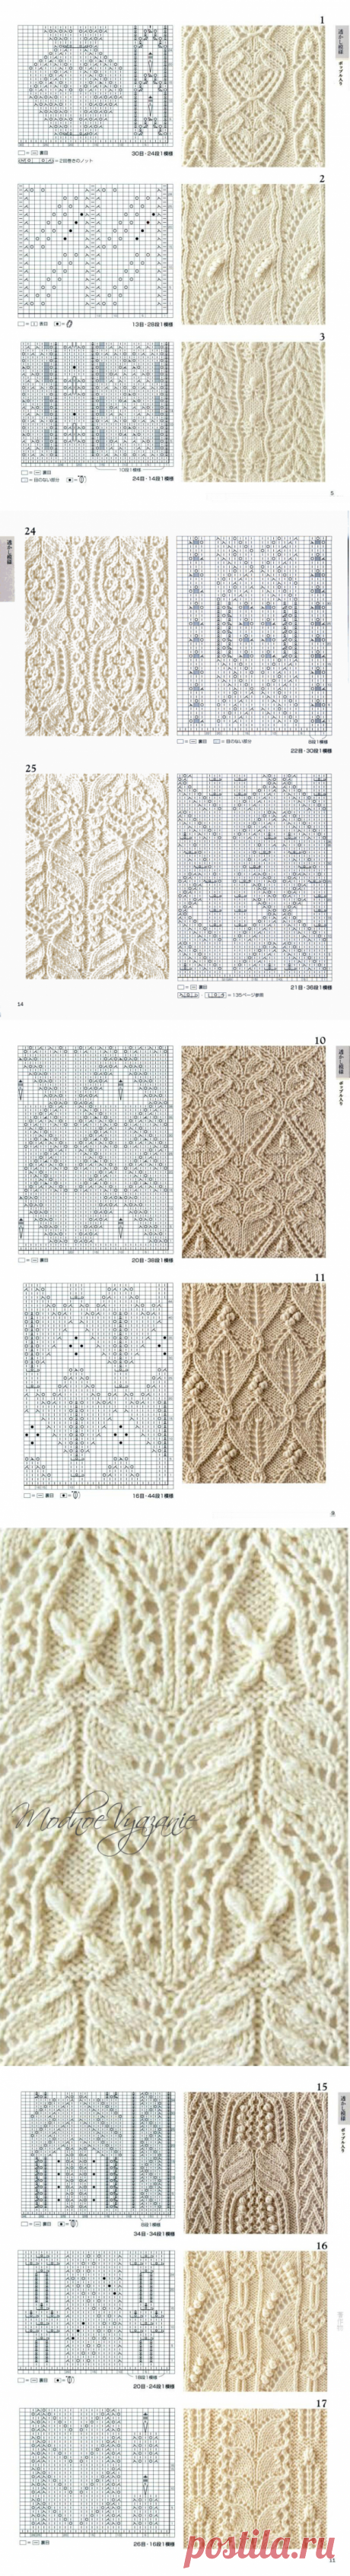 Японские ажурные узоры - коллекция №1 - Модное вязание